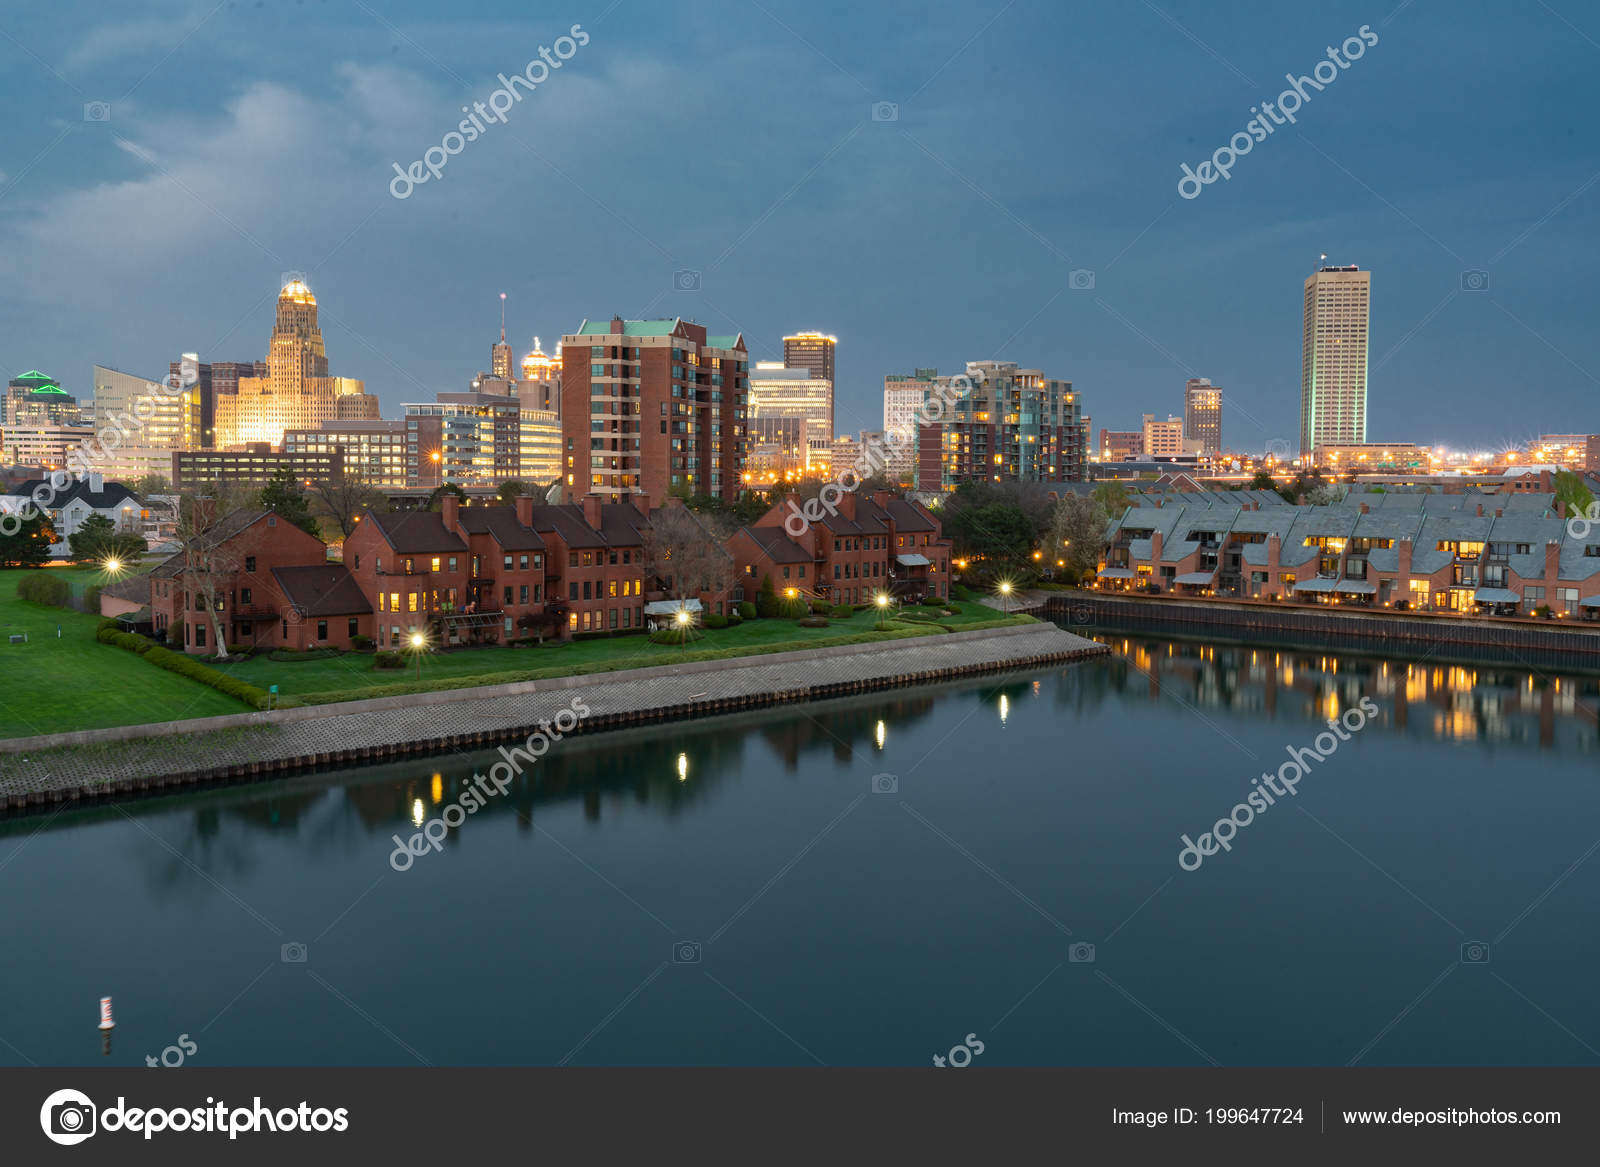 ny skyline Pictures, Buffalo ny skyline Stock & | Depositphotos®